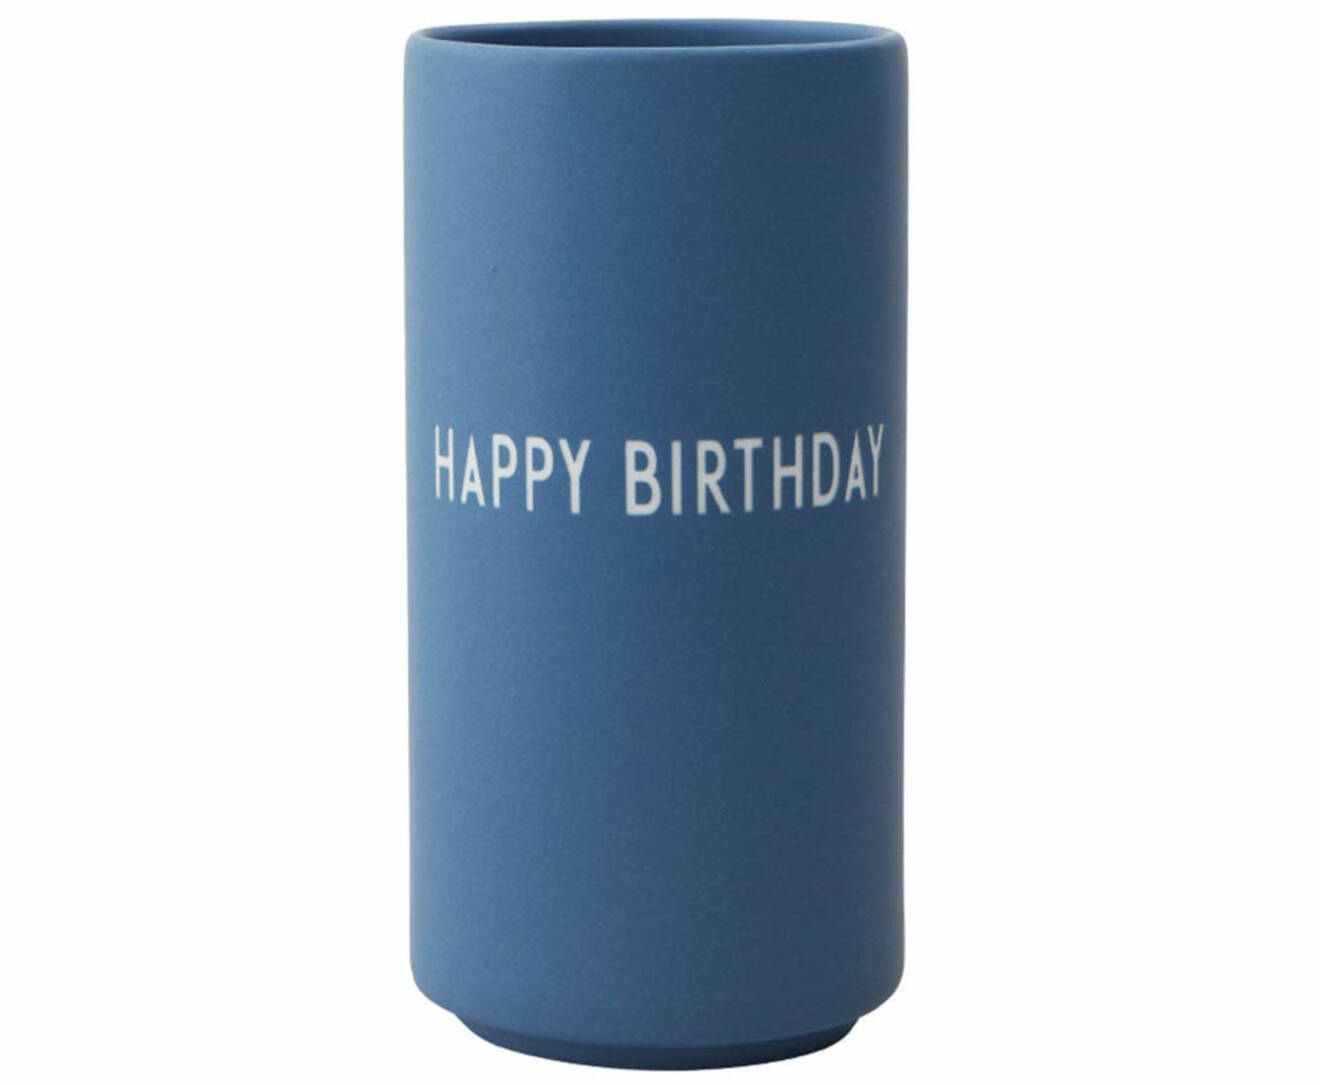 Blå vas med print Happy Birthday, från Design Letters